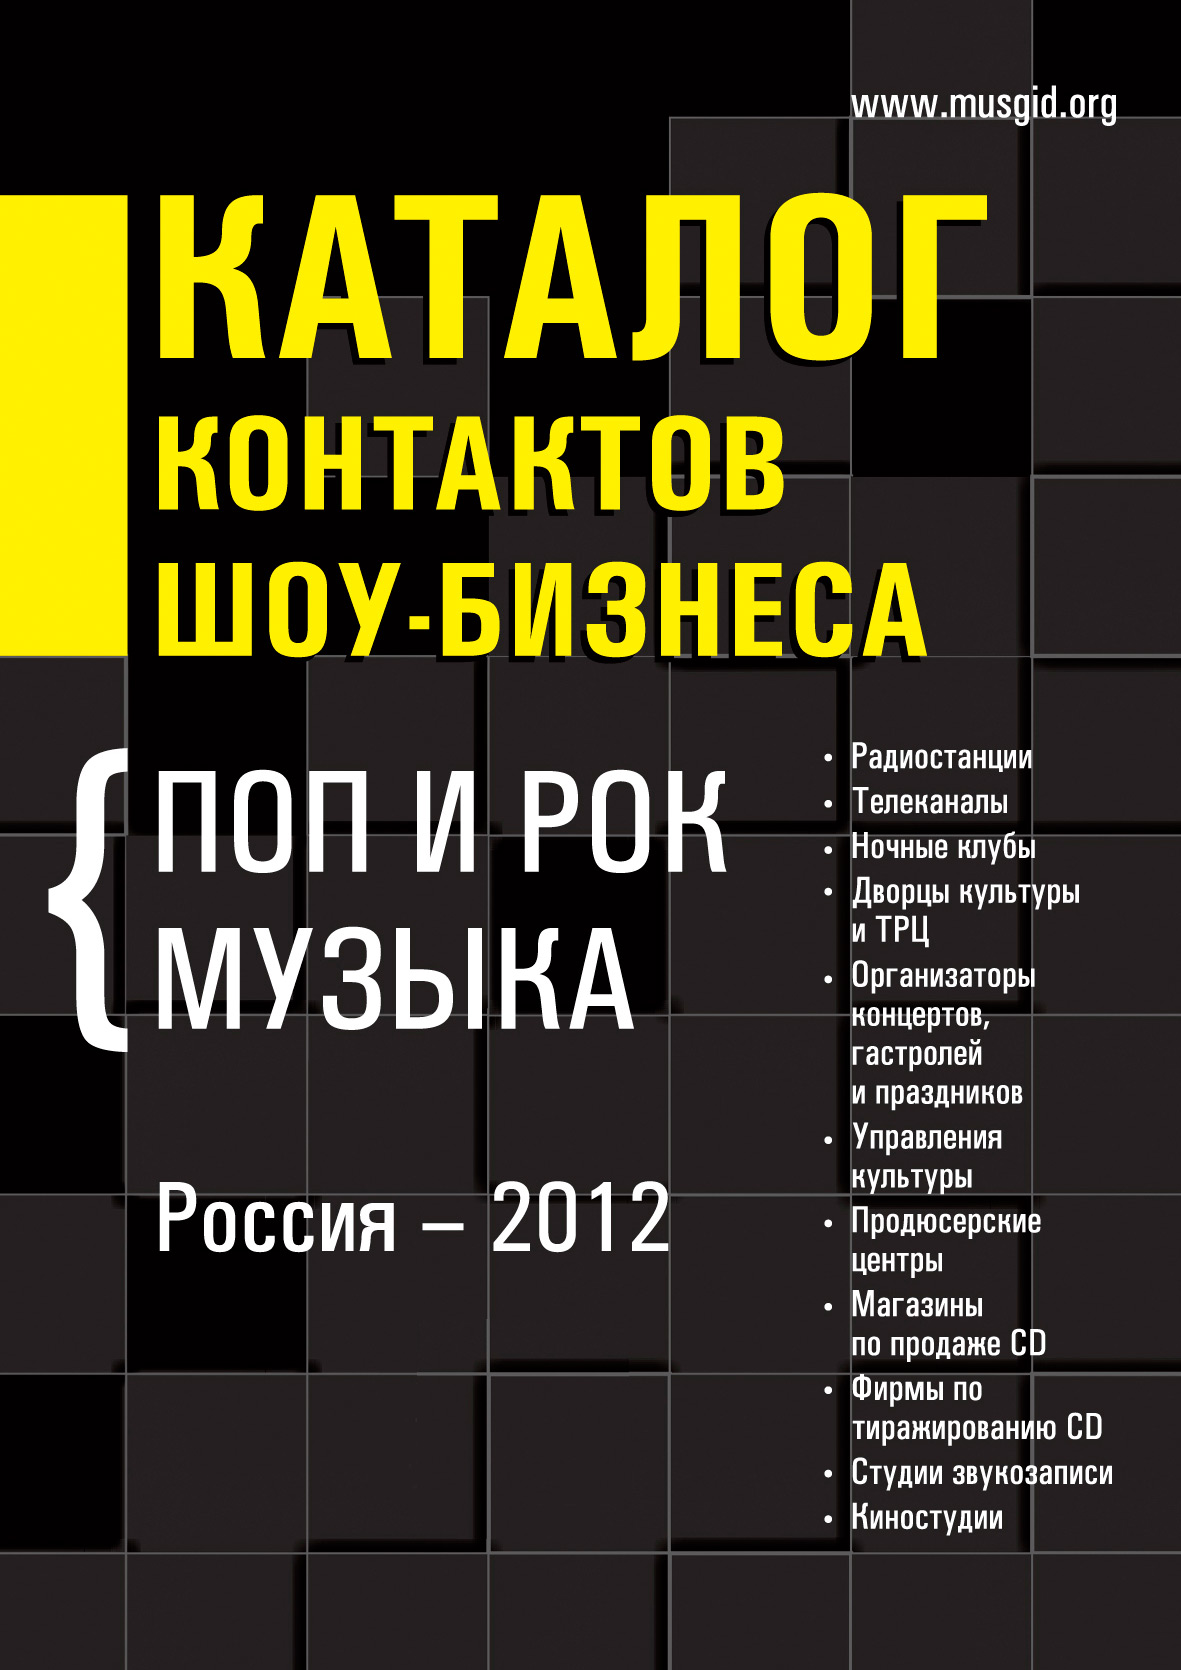 Каталог контактов шоу-бизнеса. Россия-2012. Поп и рок музыка